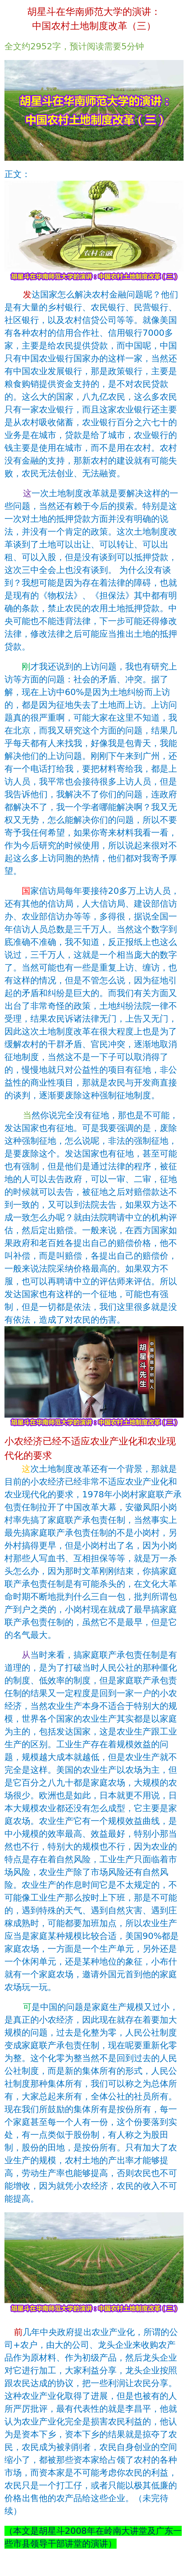 胡星斗在华南师范大学的演讲:中国农村土地制度改革(三)